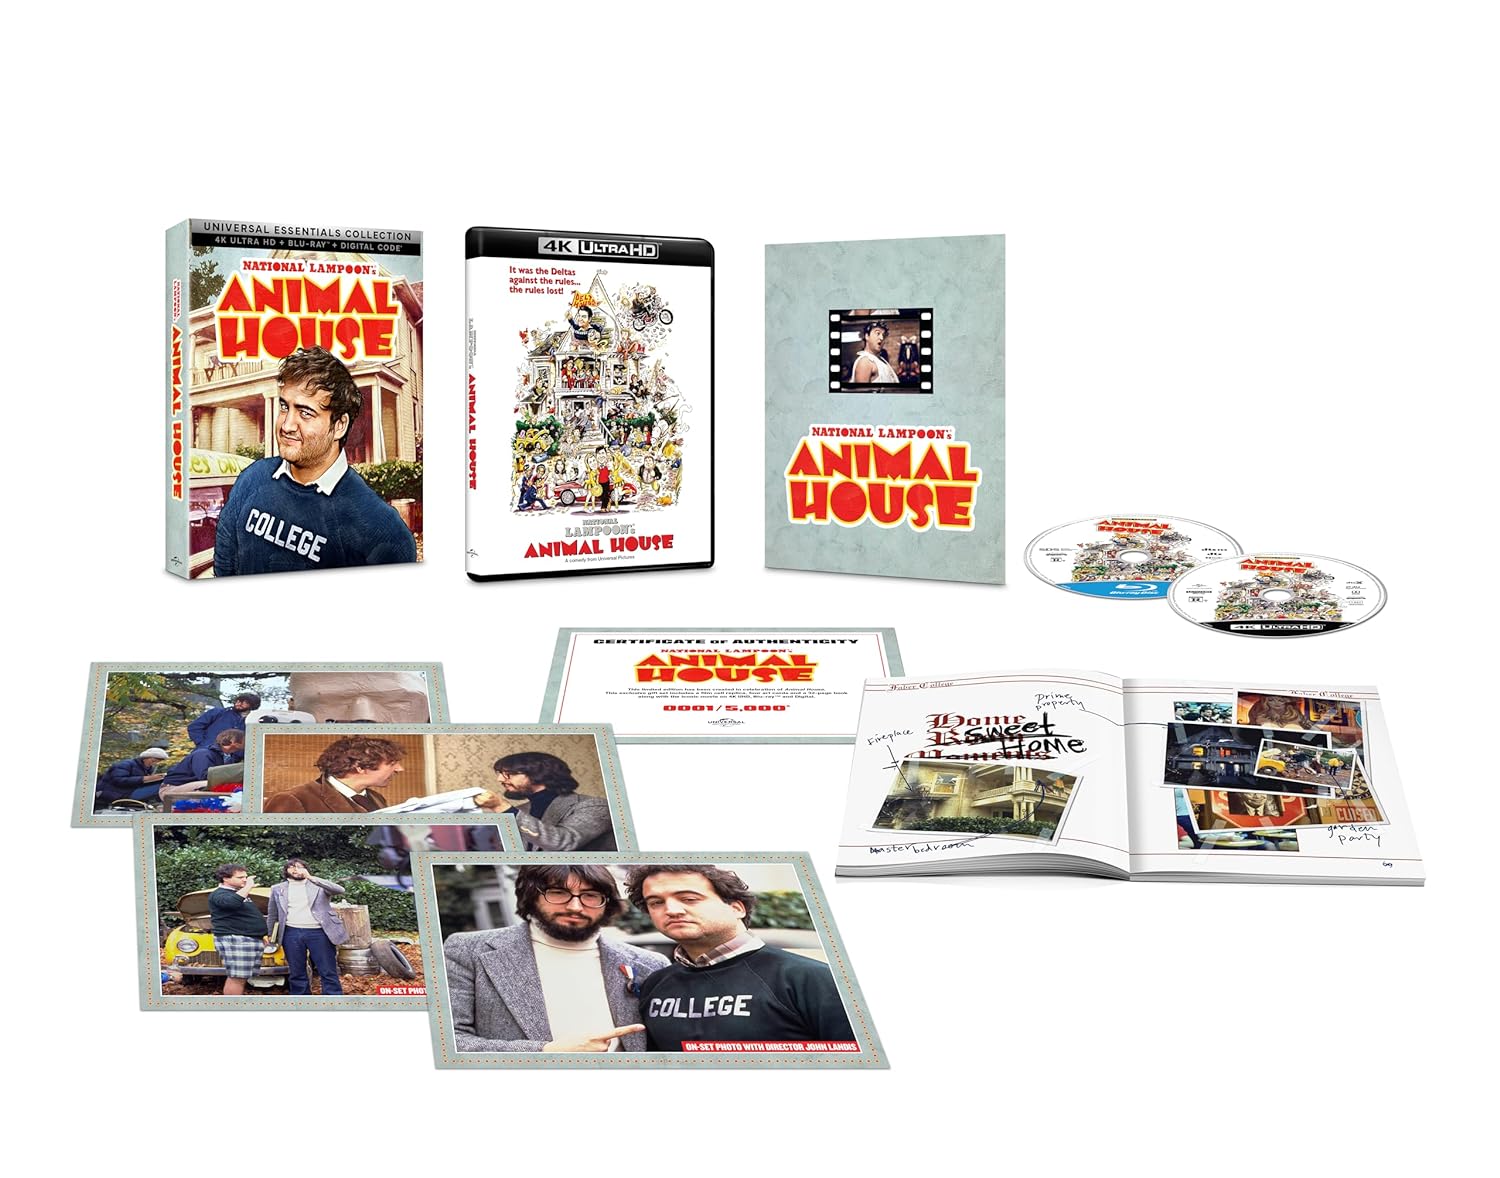 Зверинец (1978) (англ. язык) (4K UHD + Blu-ray) Universal Essentials Collection